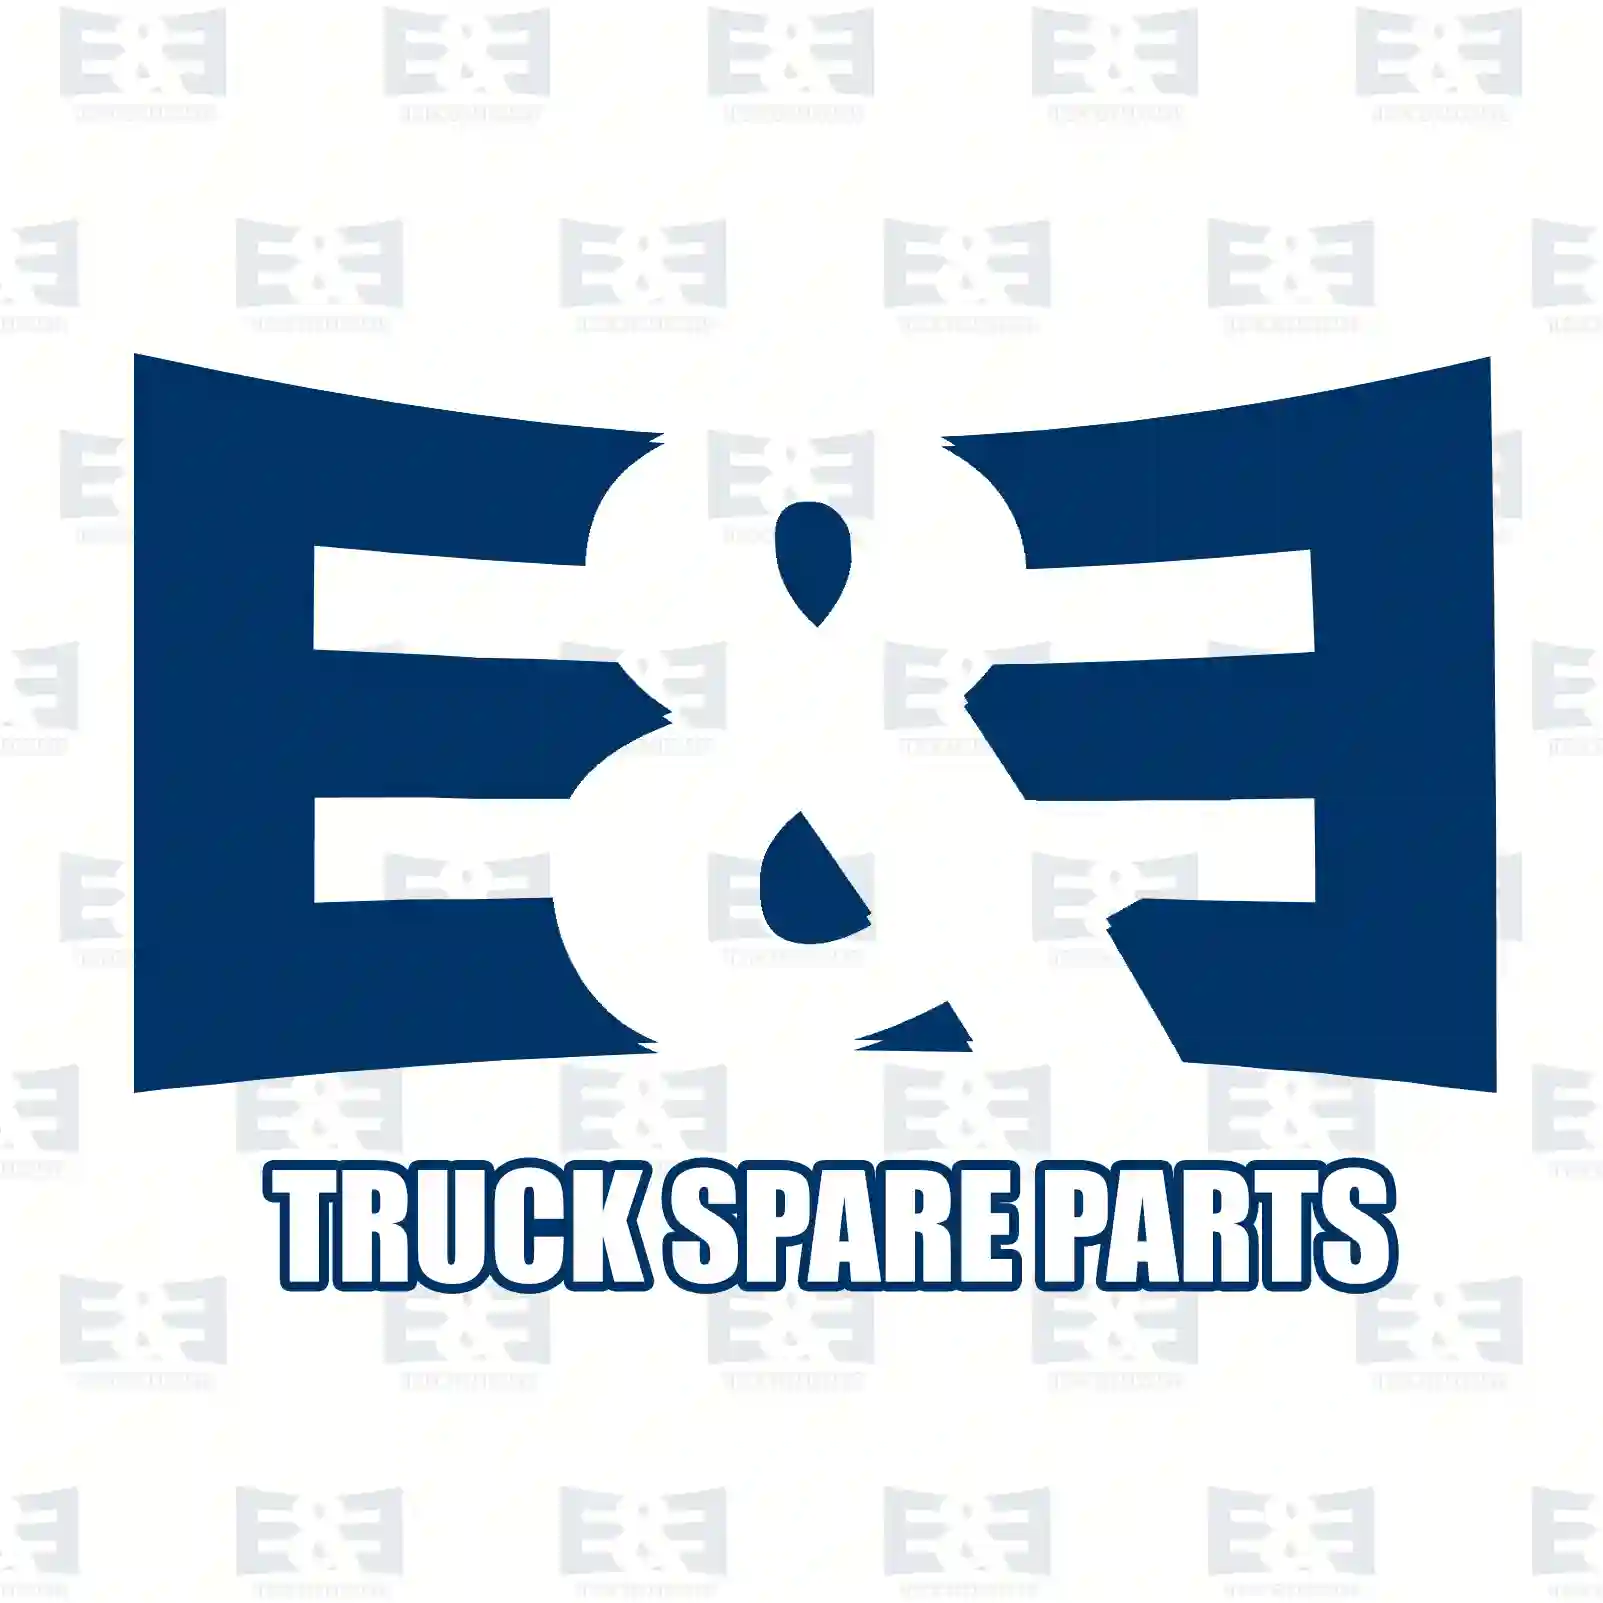 License plate lamp, 2E2299838, 4388315, 6559576, 92VB-13550-BB ||  2E2299838 E&E Truck Spare Parts | Truck Spare Parts, Auotomotive Spare Parts License plate lamp, 2E2299838, 4388315, 6559576, 92VB-13550-BB ||  2E2299838 E&E Truck Spare Parts | Truck Spare Parts, Auotomotive Spare Parts